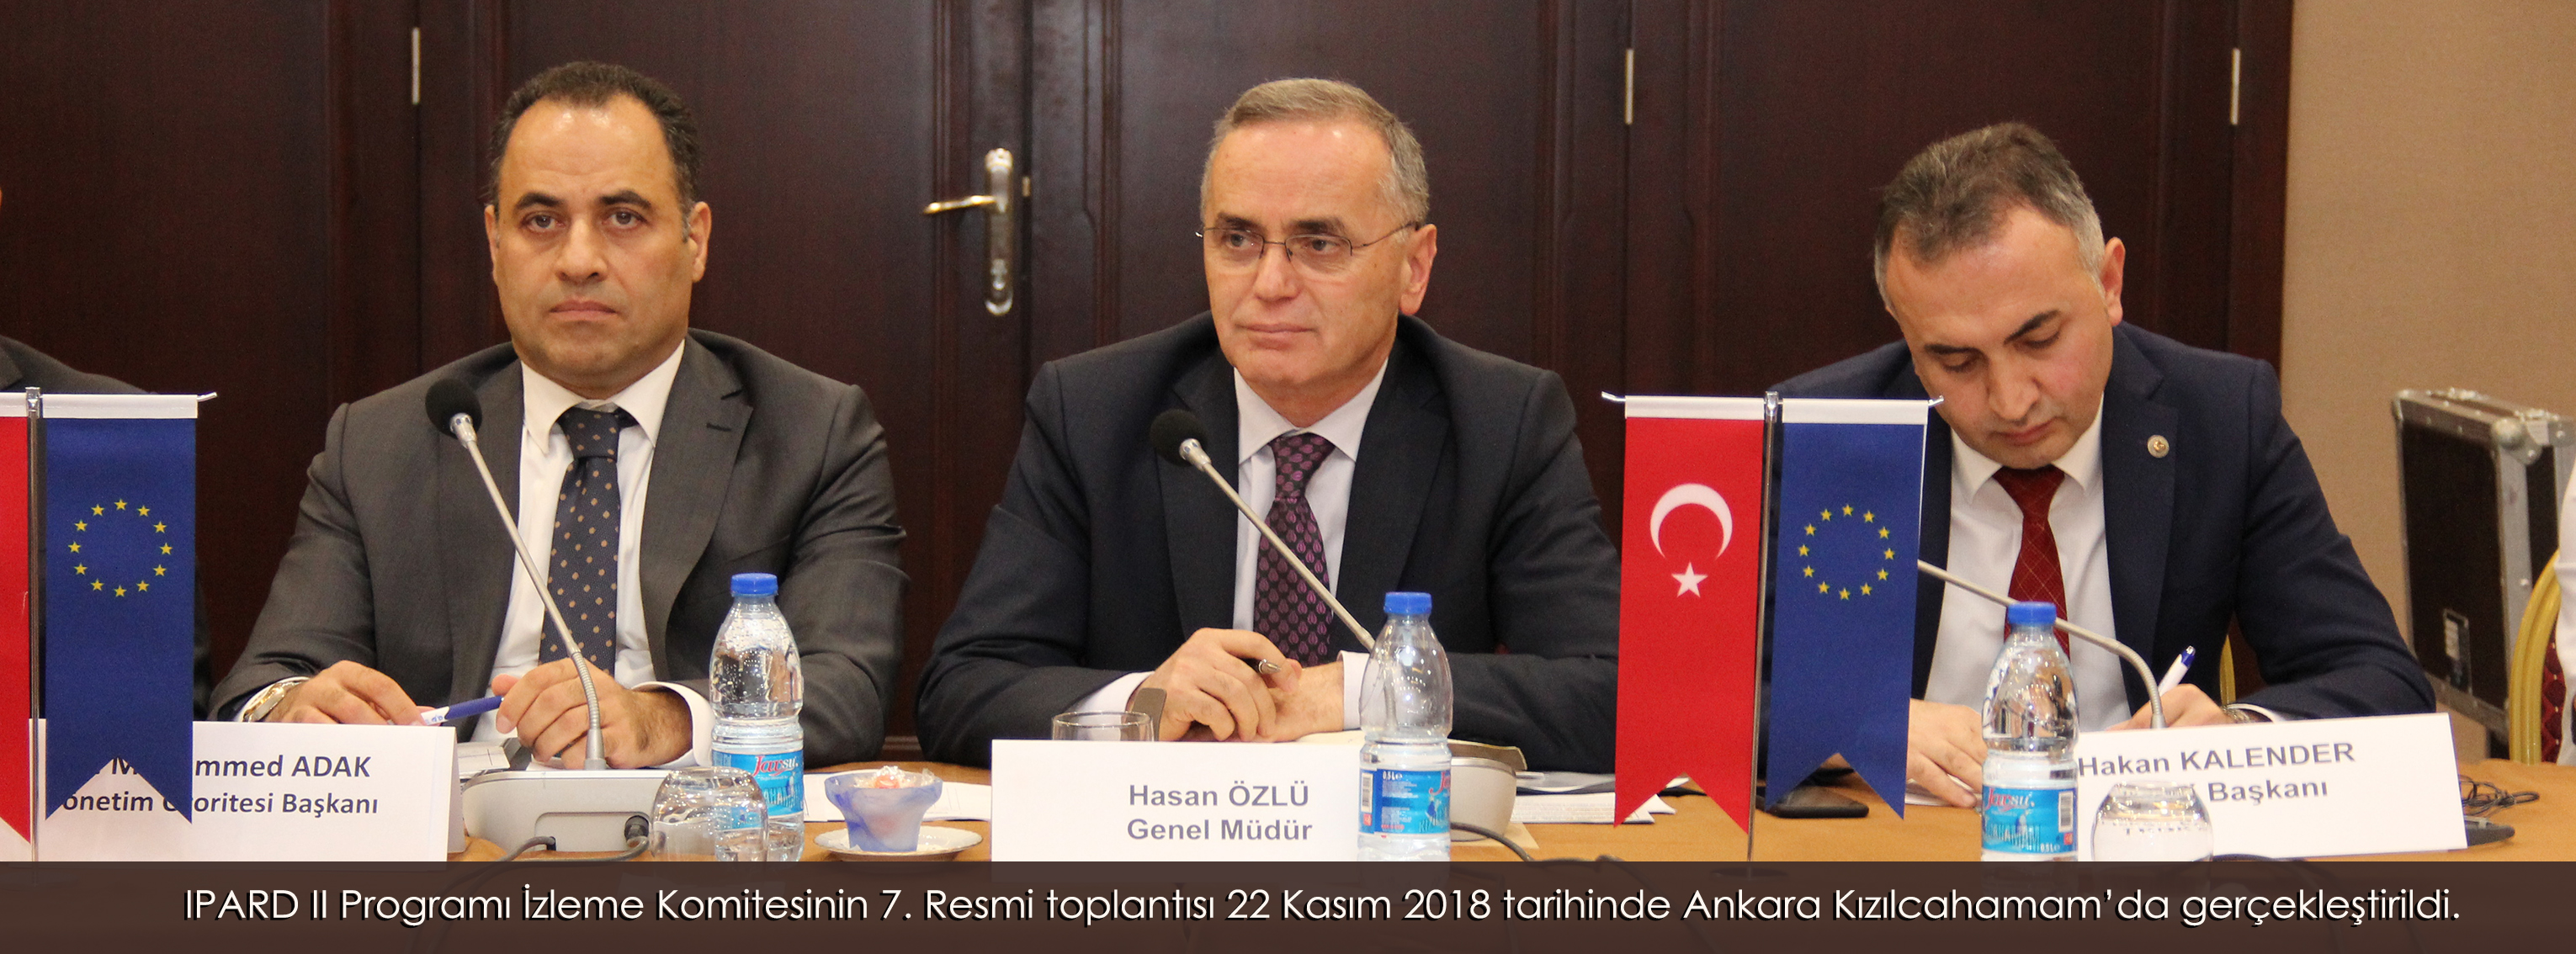 IPARD II Programı İzleme Komitesinin 7 inci Resmi toplantısı 22 Kasım 2018 tarihinde Ankara Kızılcahamam’da gerçekleştirildi.